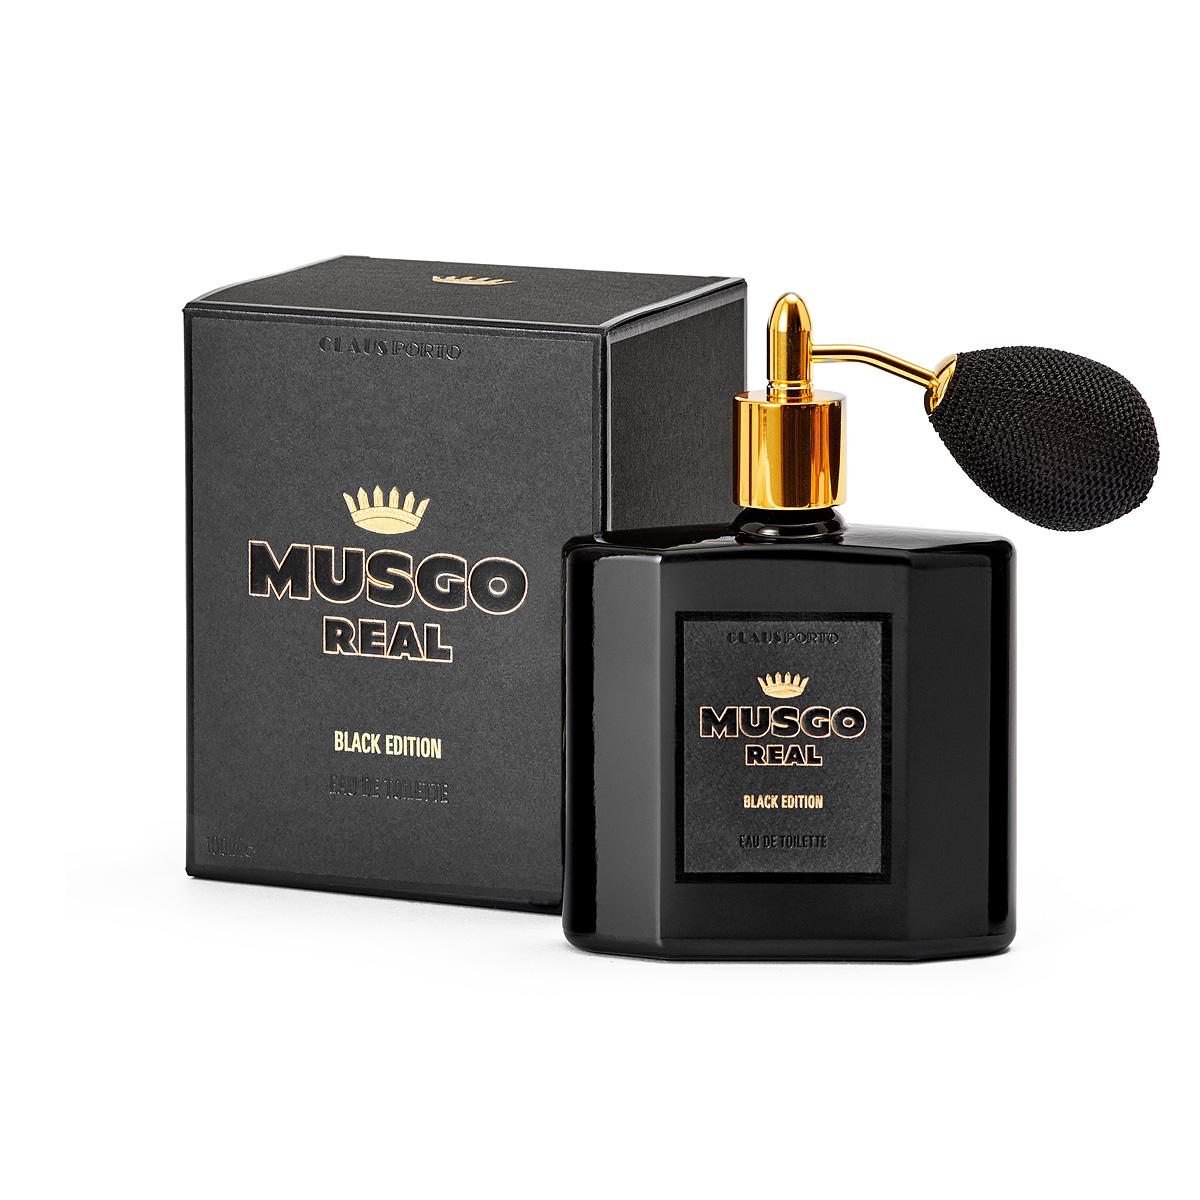 Musgo Real Black Edition Eau de Toilette (100ml)